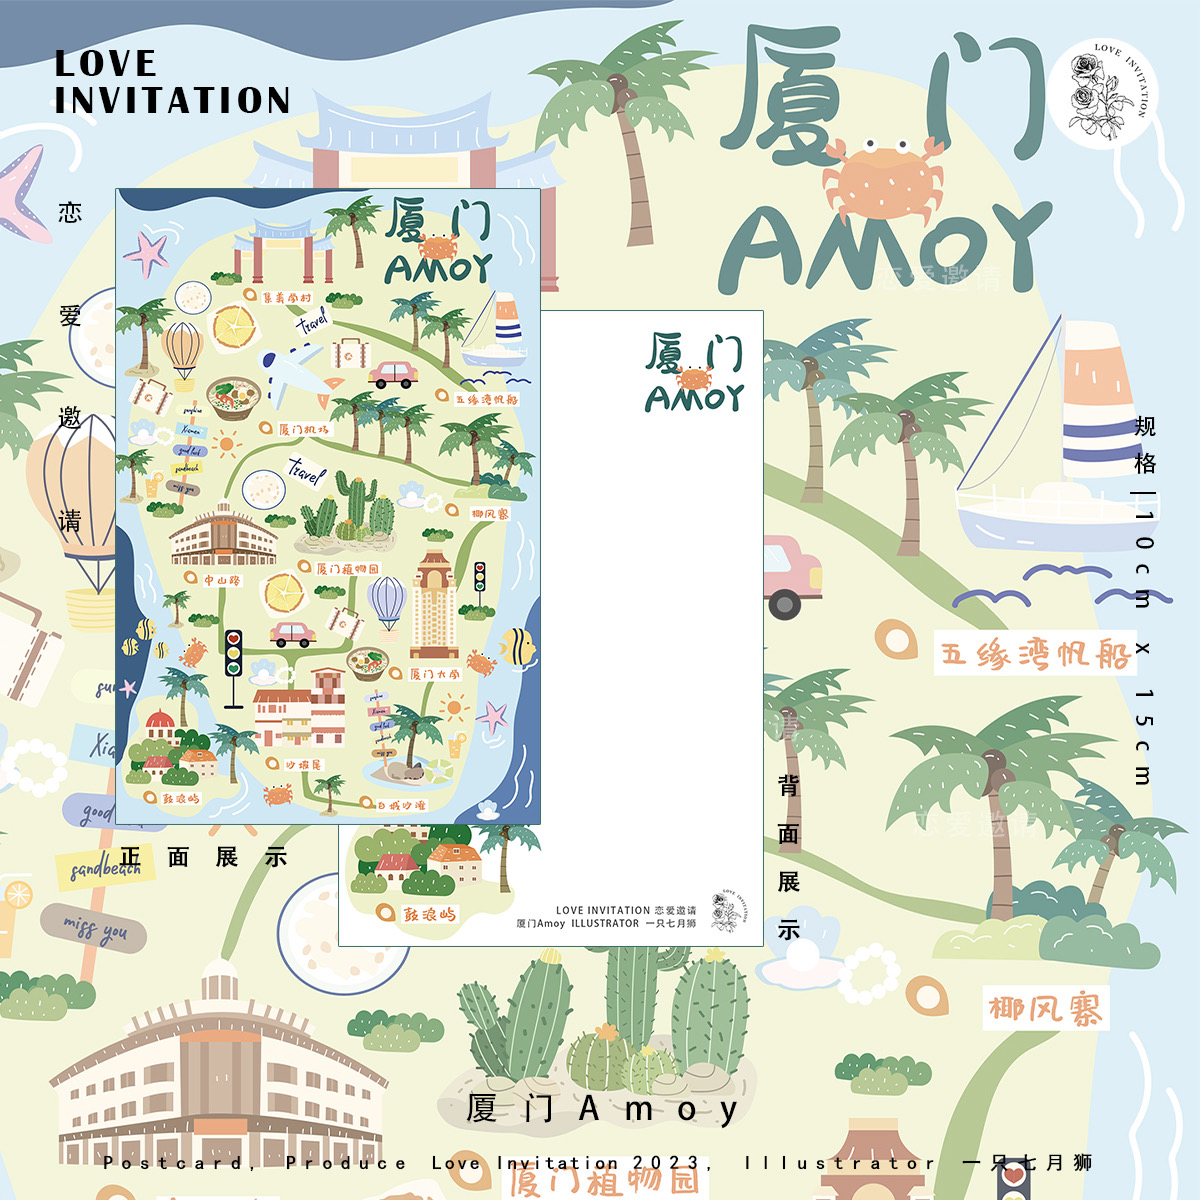 恋爱邀请 原创 插画明信片 创意旅行 Amoy厦门旅游地图 单张售